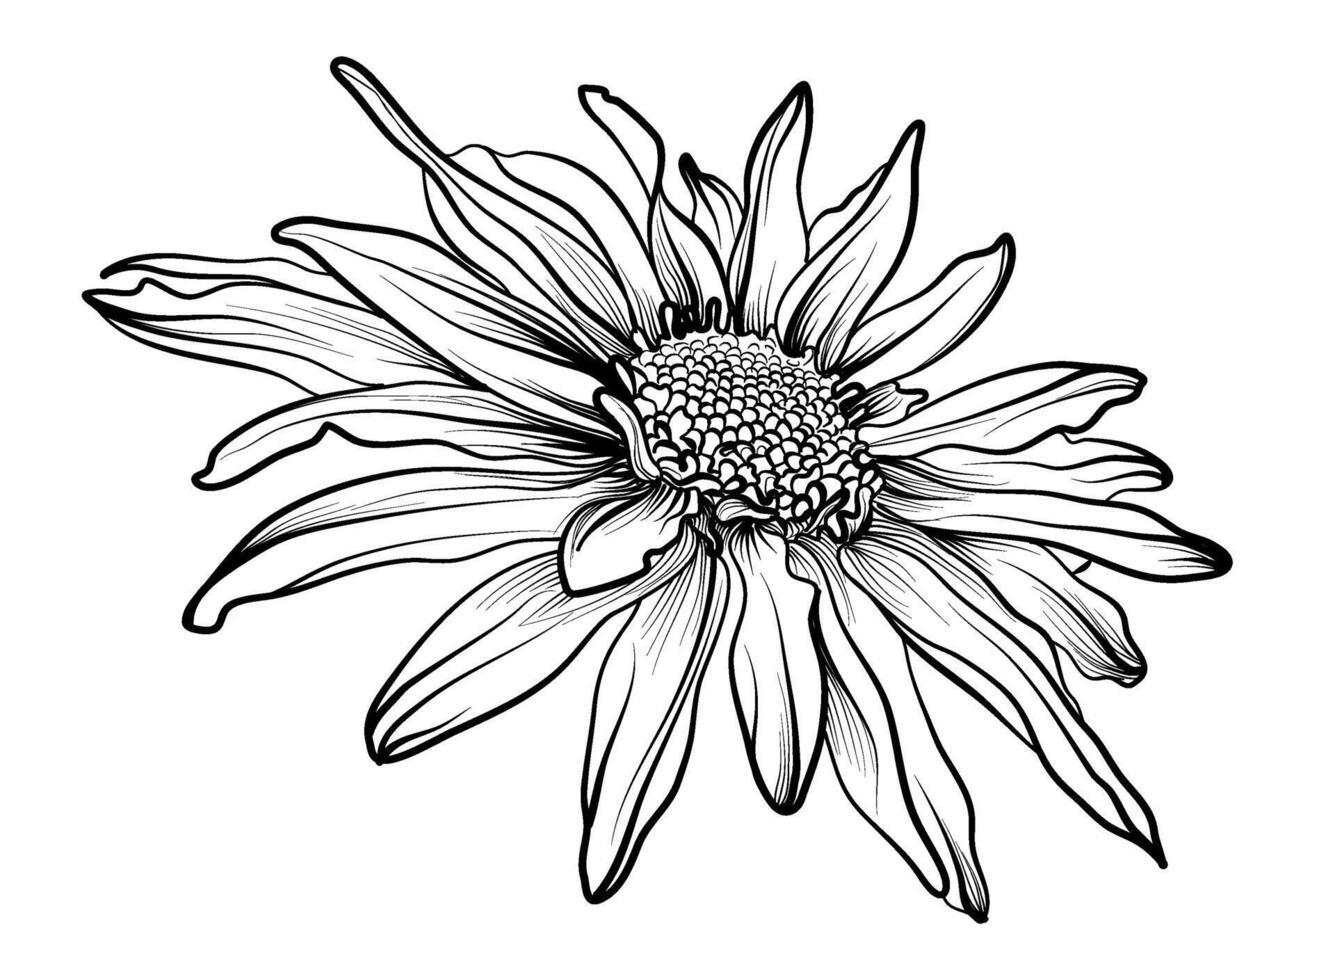 svart och vit ritad för hand krysantemum blomma vektor